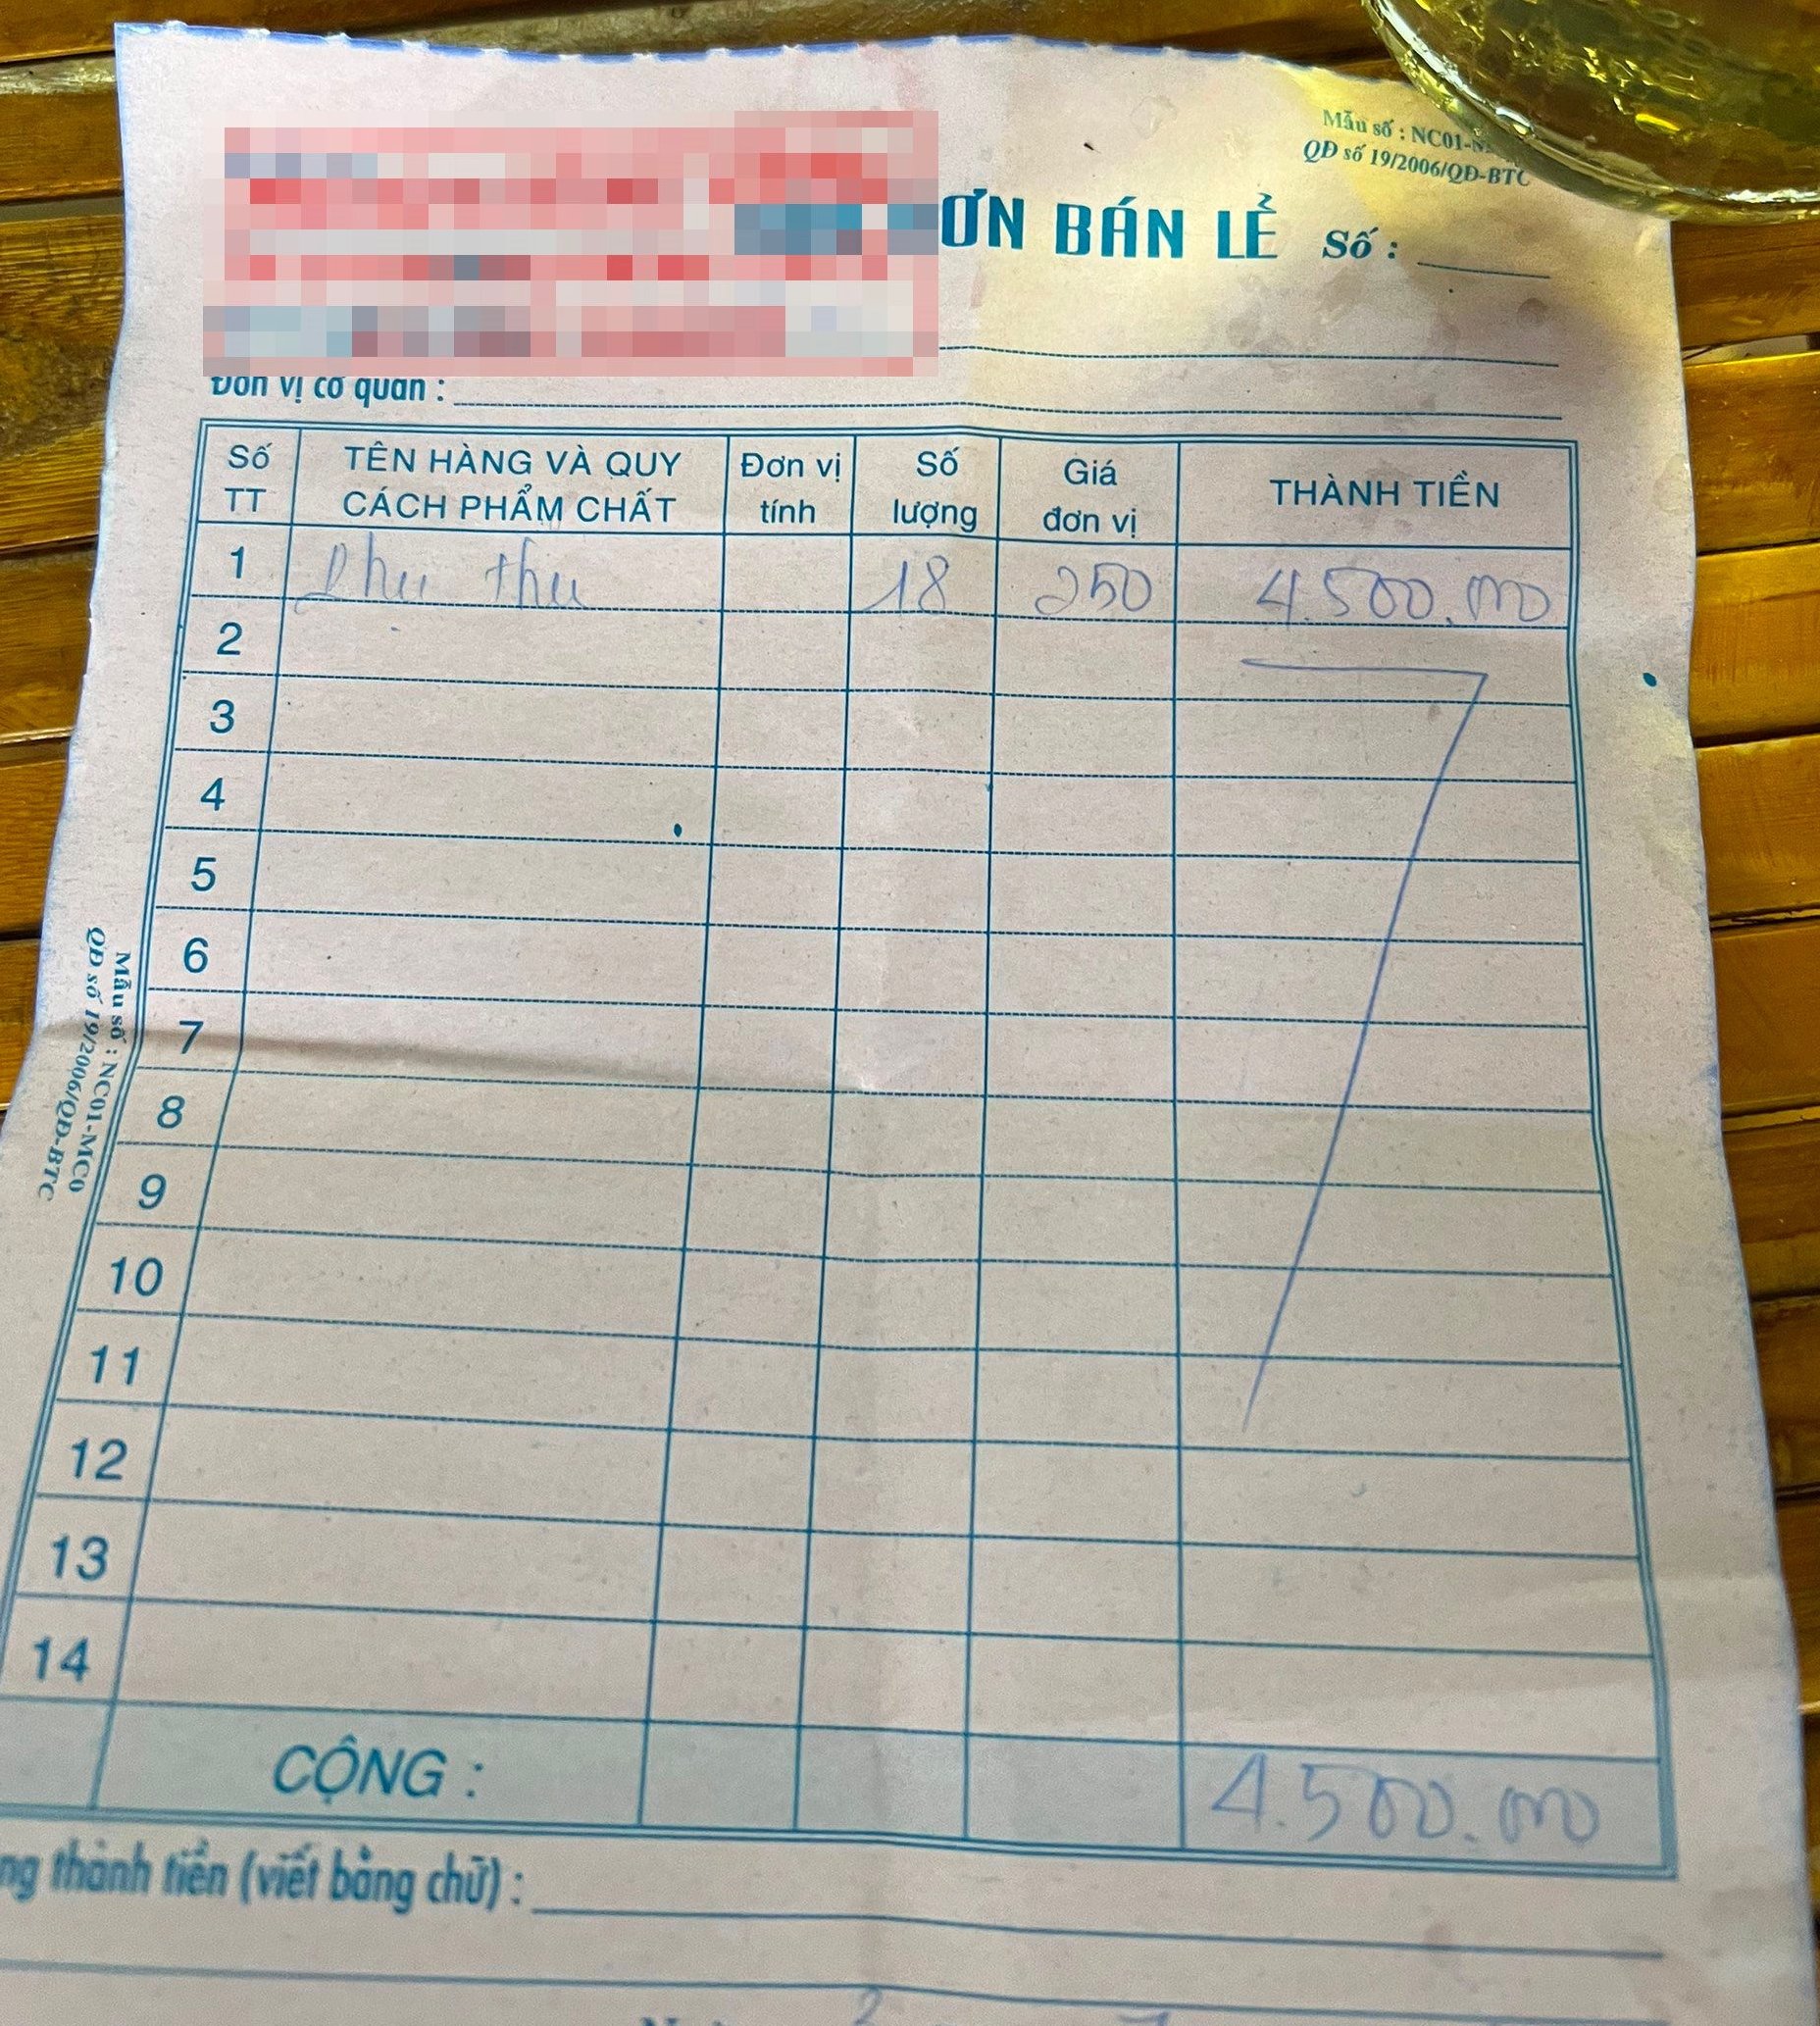 Thực hư một nhà hàng ở Bình Thuận phụ thu 4,5 triệu đồng cho 18 kg hải sản do khách mang vào - Ảnh 1.